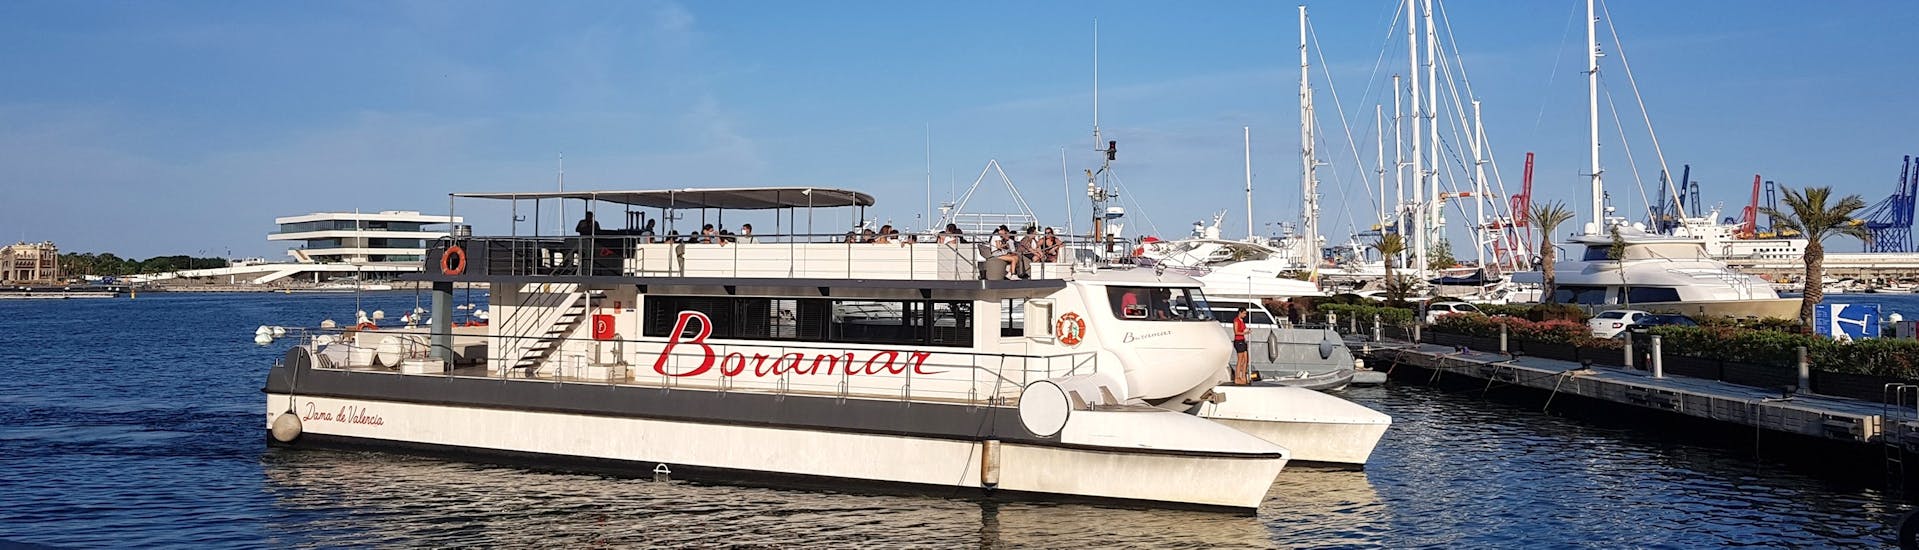 Vue de notre bateau lors d'une excursion en bateau de Valencia à Port Saplaya avec Paella avec Boramar Valencia.